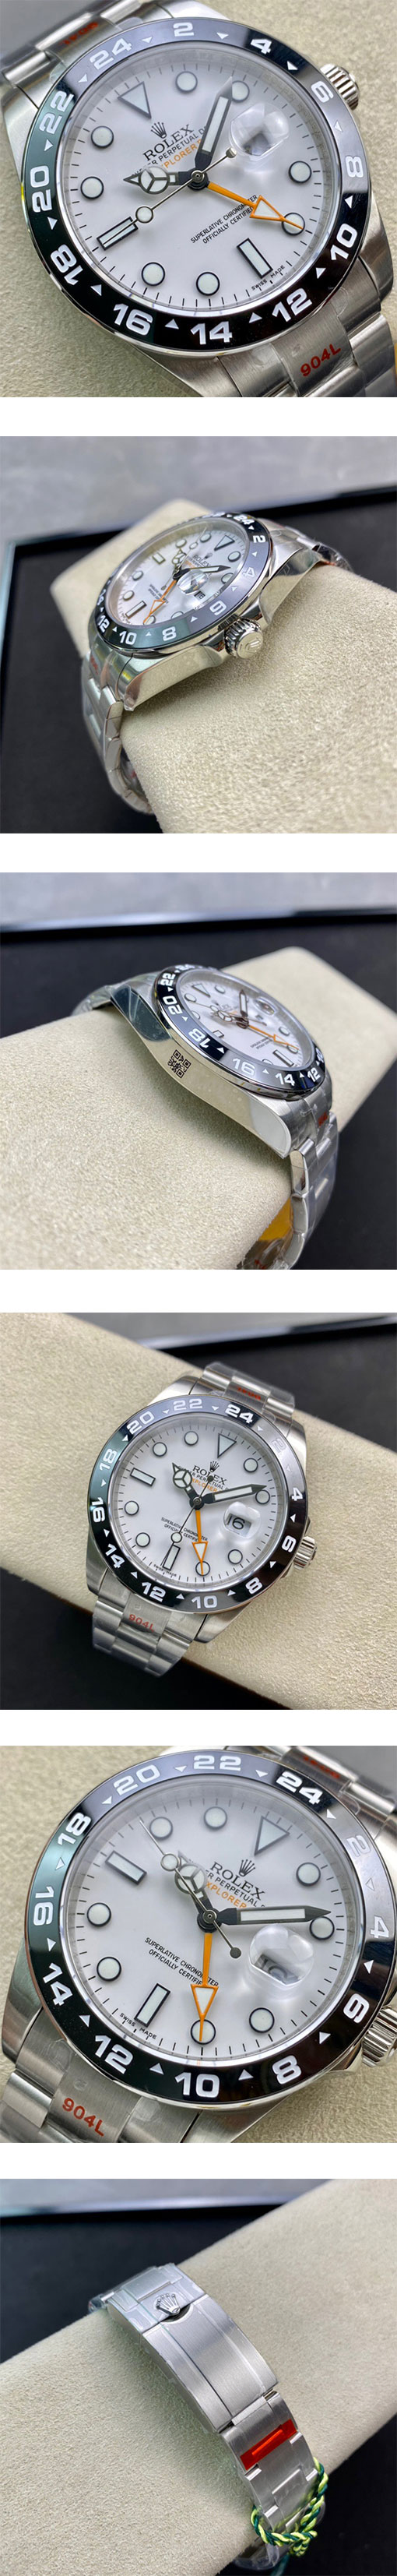 ロレックス(ROLEX) スーパーコピー時計 エクスプローラーII 216570-77210  , ホワイト  